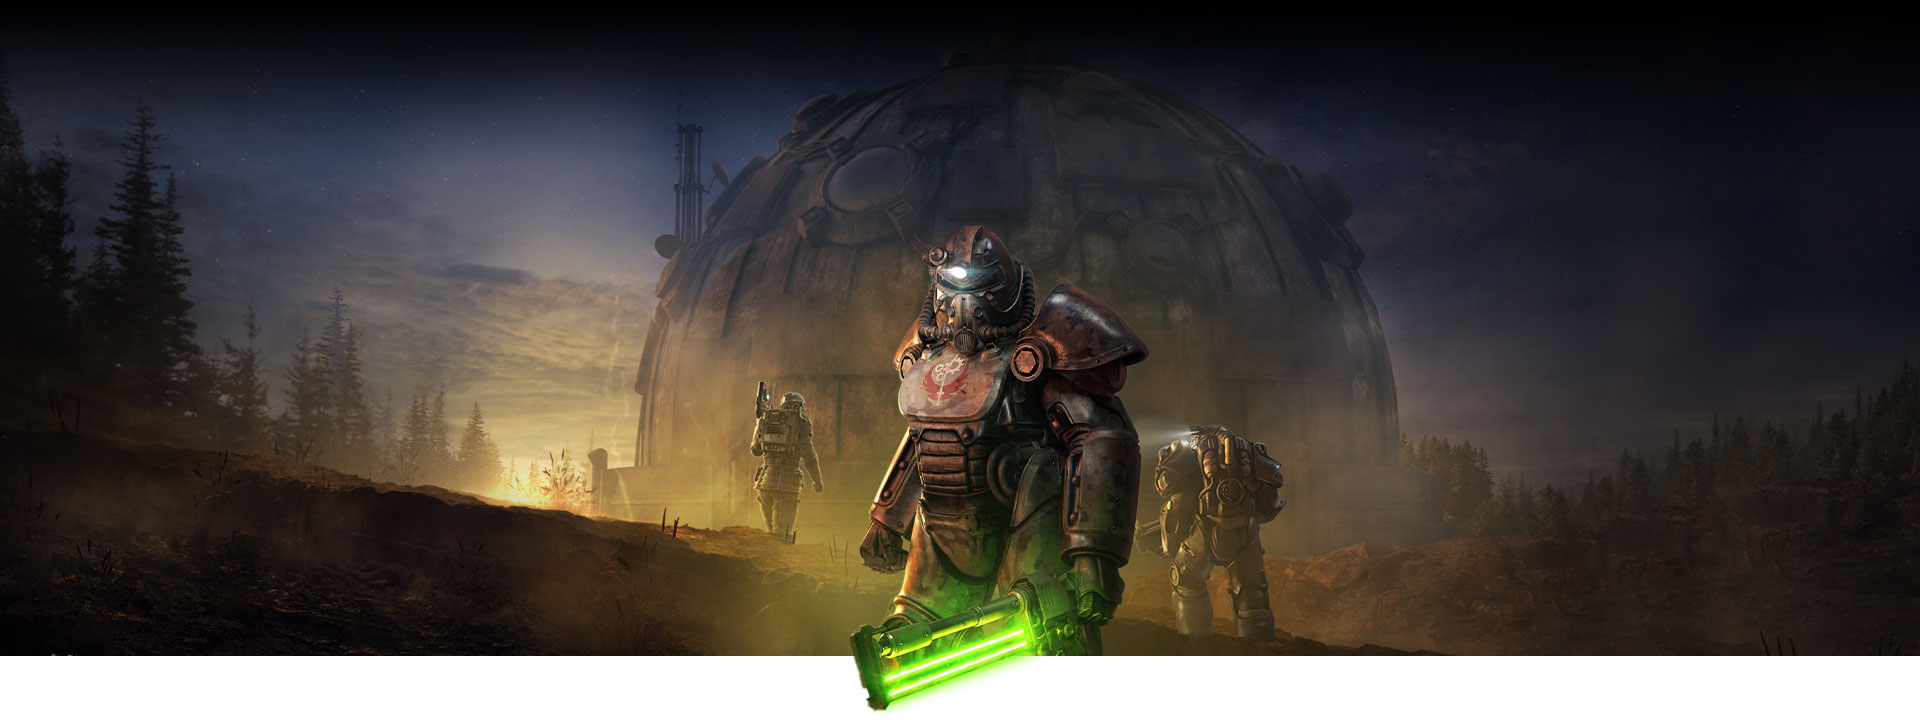 Der Charakter in Power Armor hält eine leuchtende Nahkampfwaffe vor einem großen Kuppelgebäude